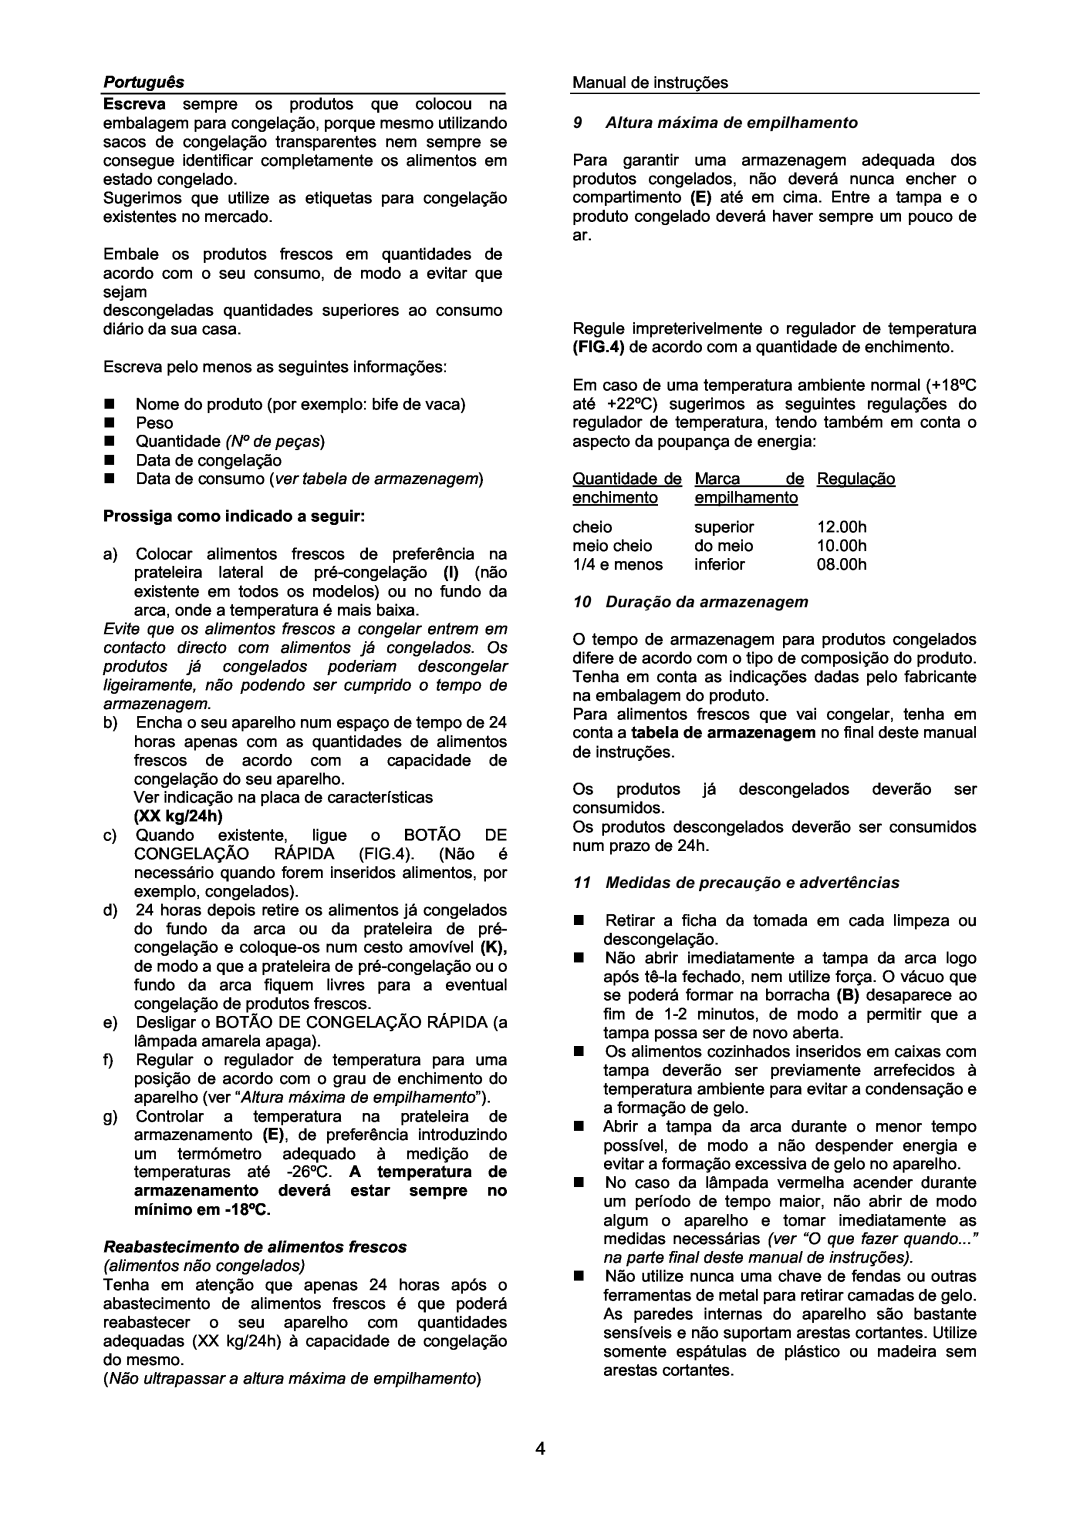 Haier BD-203GAA KX manual Português, Data de consumo ver tabela de armazenagem, Prossiga como indicado a seguir, XX kg/24h 